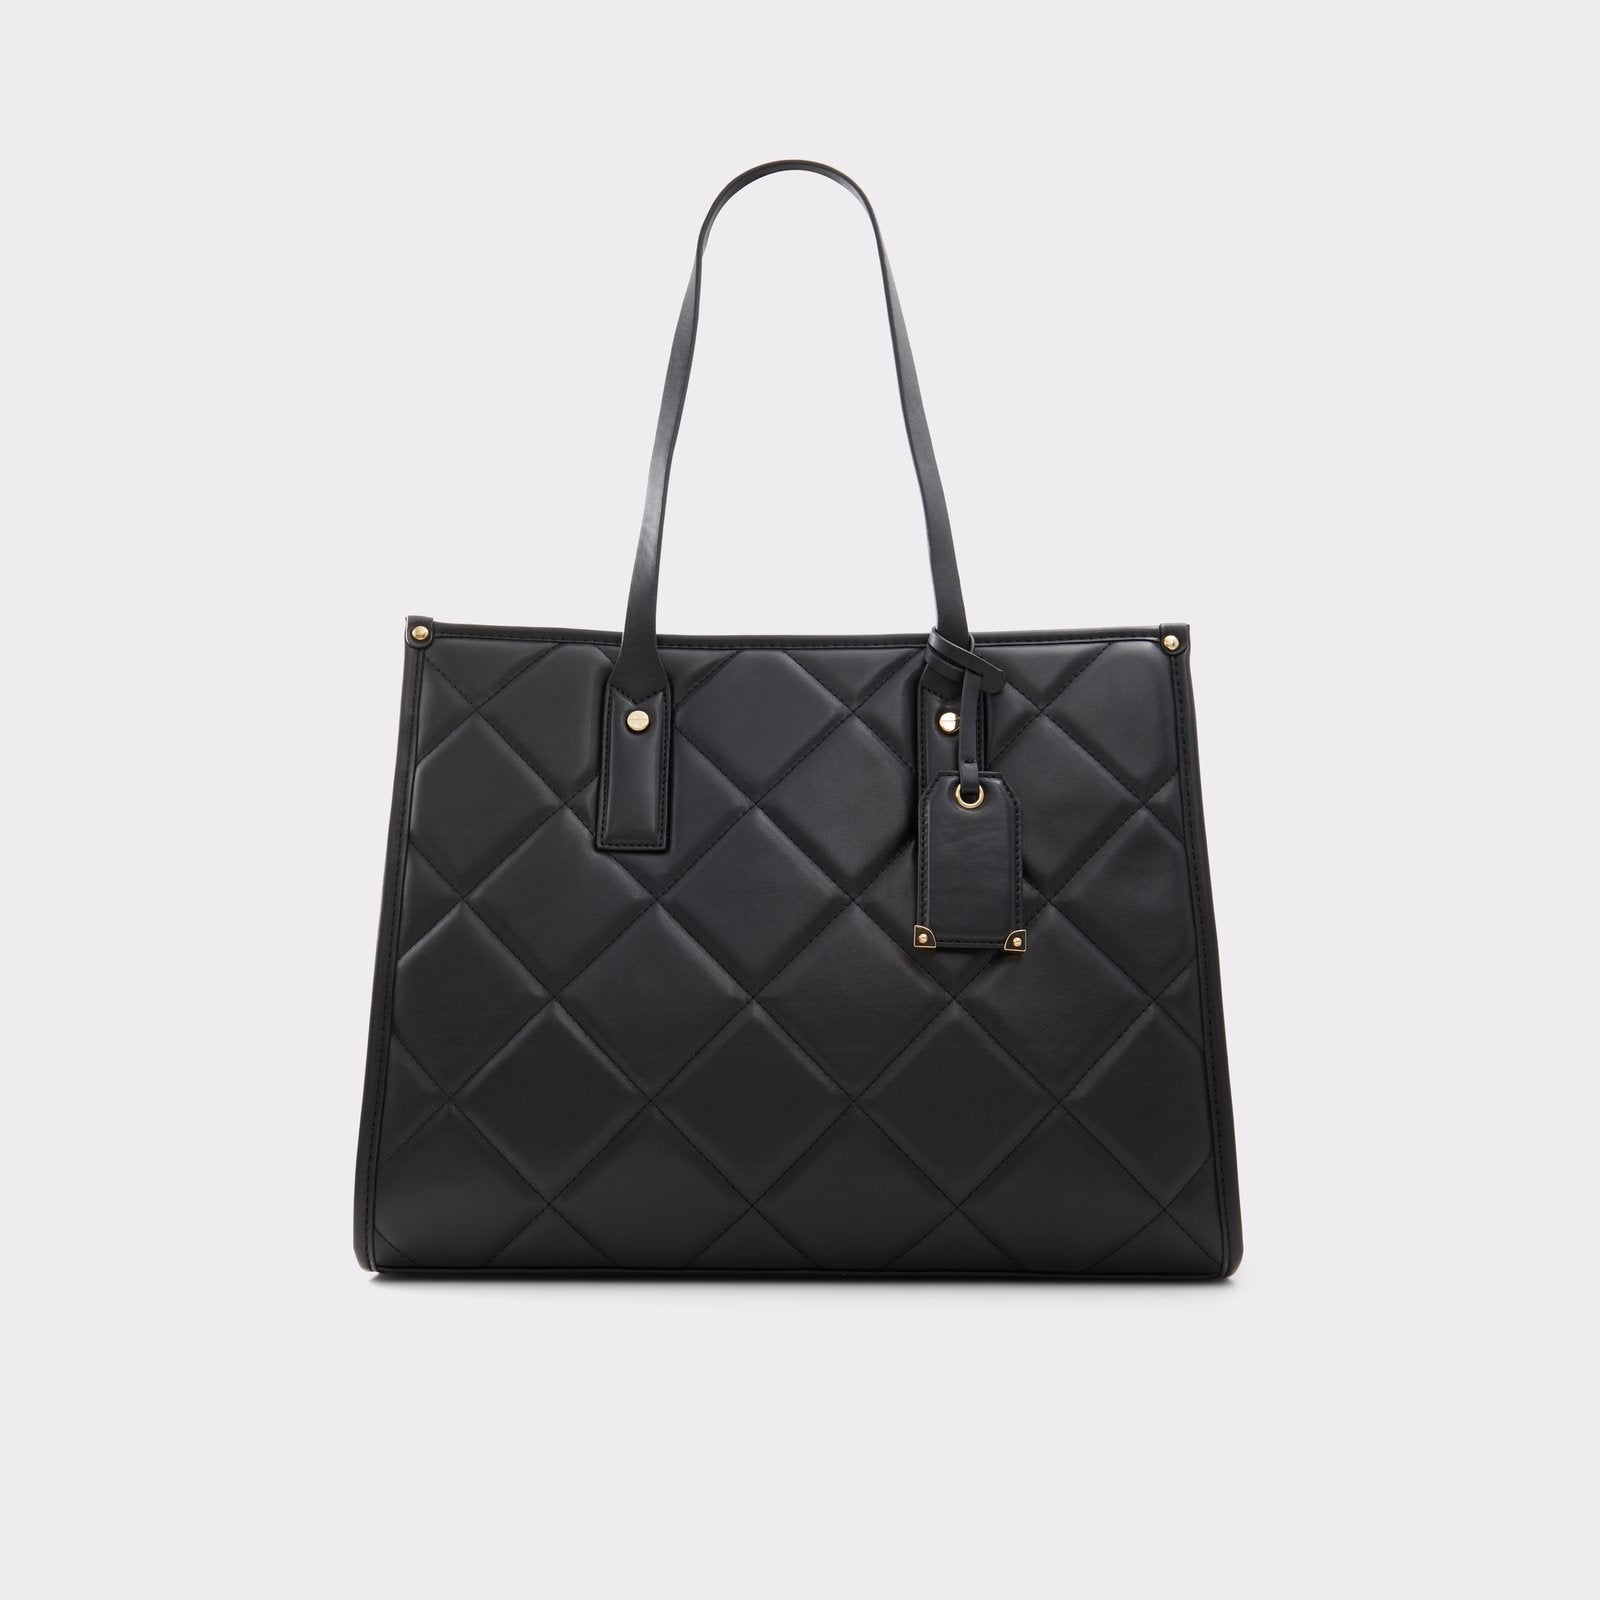 ALDO Handbags | Dillard's